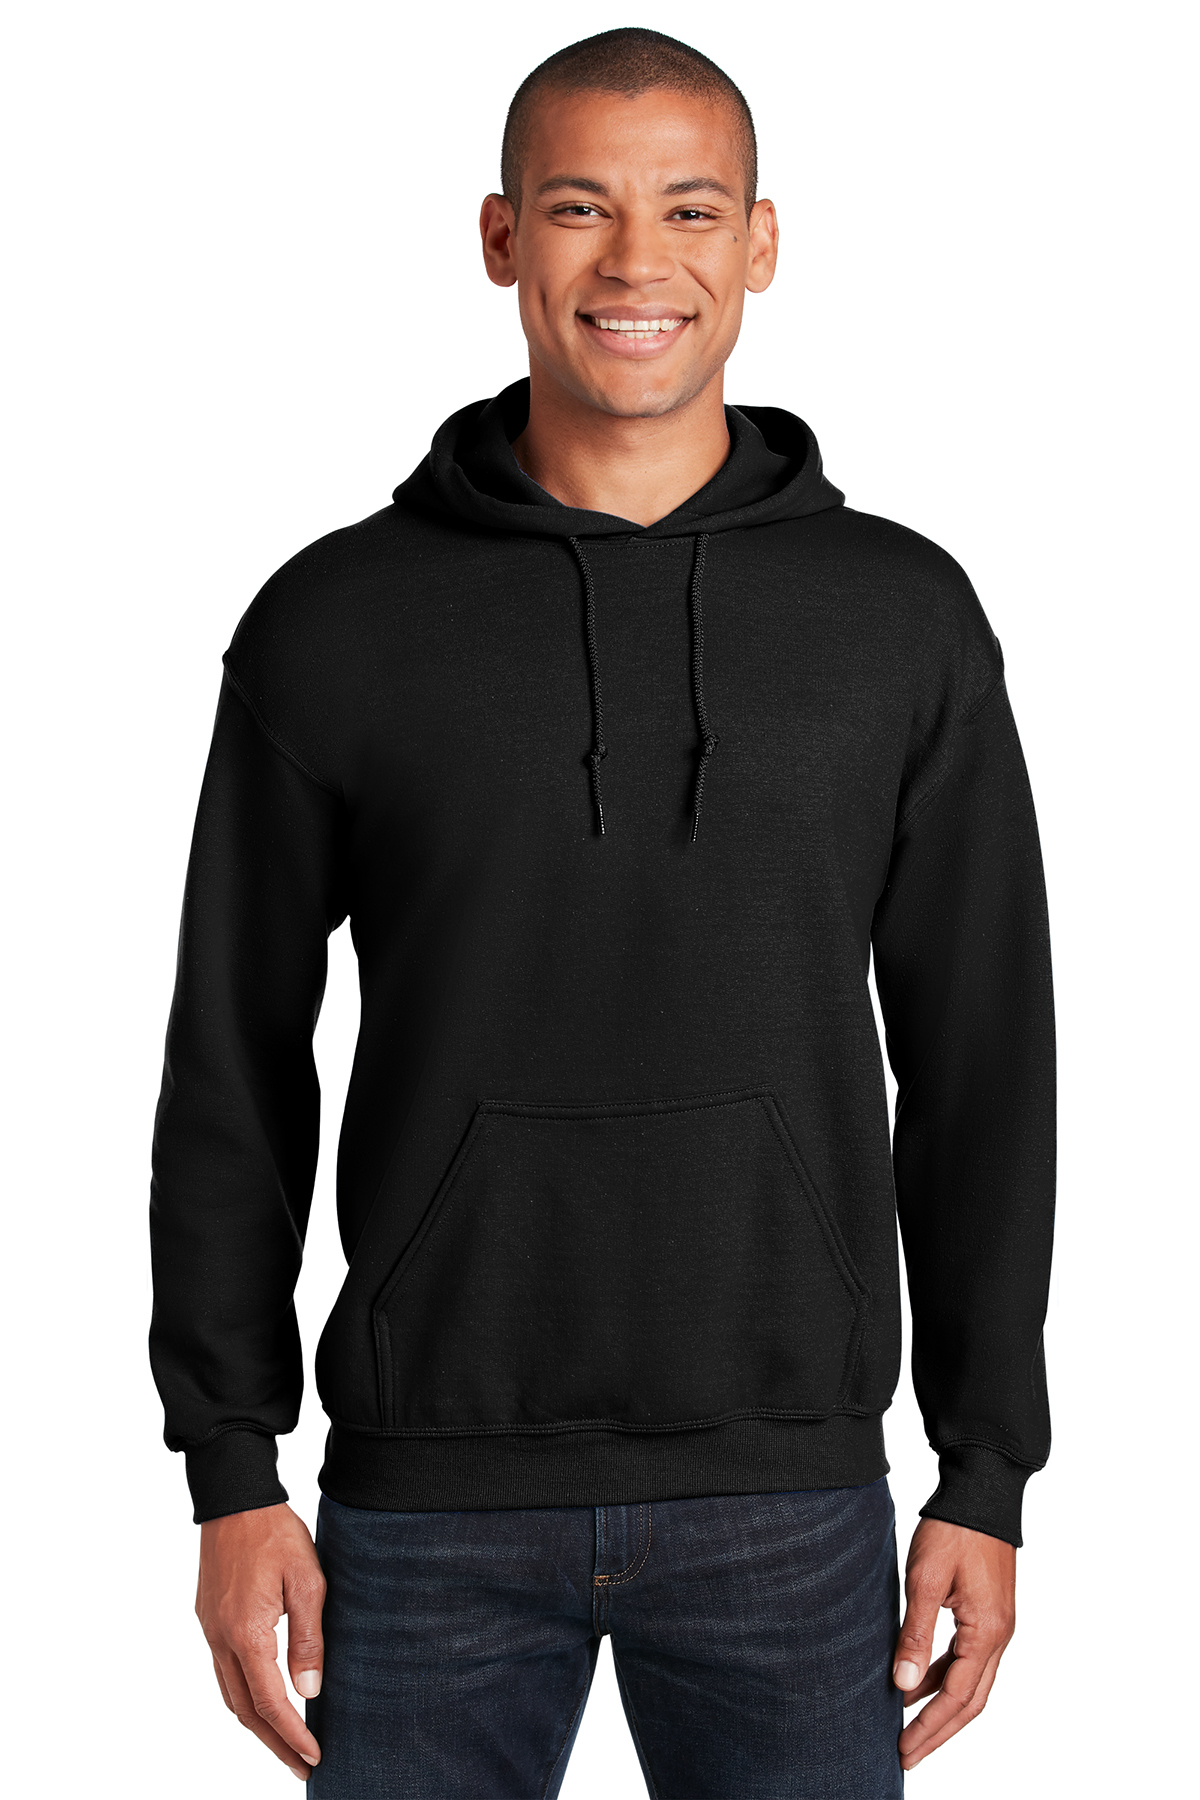 Meetbaar Fonkeling uitspraak Gildan - Heavy Blend Hooded Sweatshirt | Product | SanMar